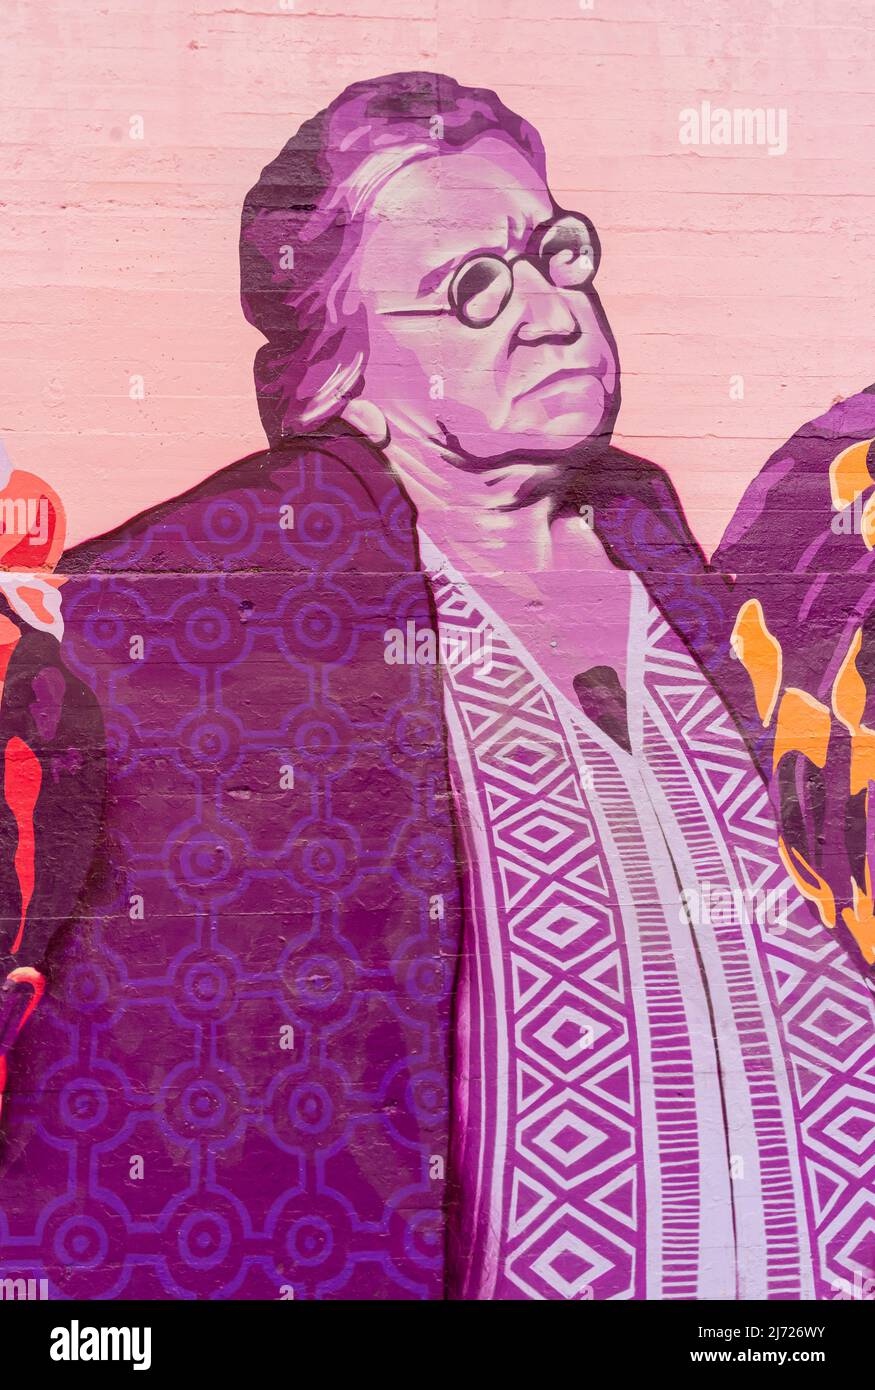 Wandbild der russischen anarchistischen Aktivistin Emma Goldman, Concepcion Feministische Wandbild La Unión hace la fuerza, an der Wand in, Madrid Spanien Stockfoto